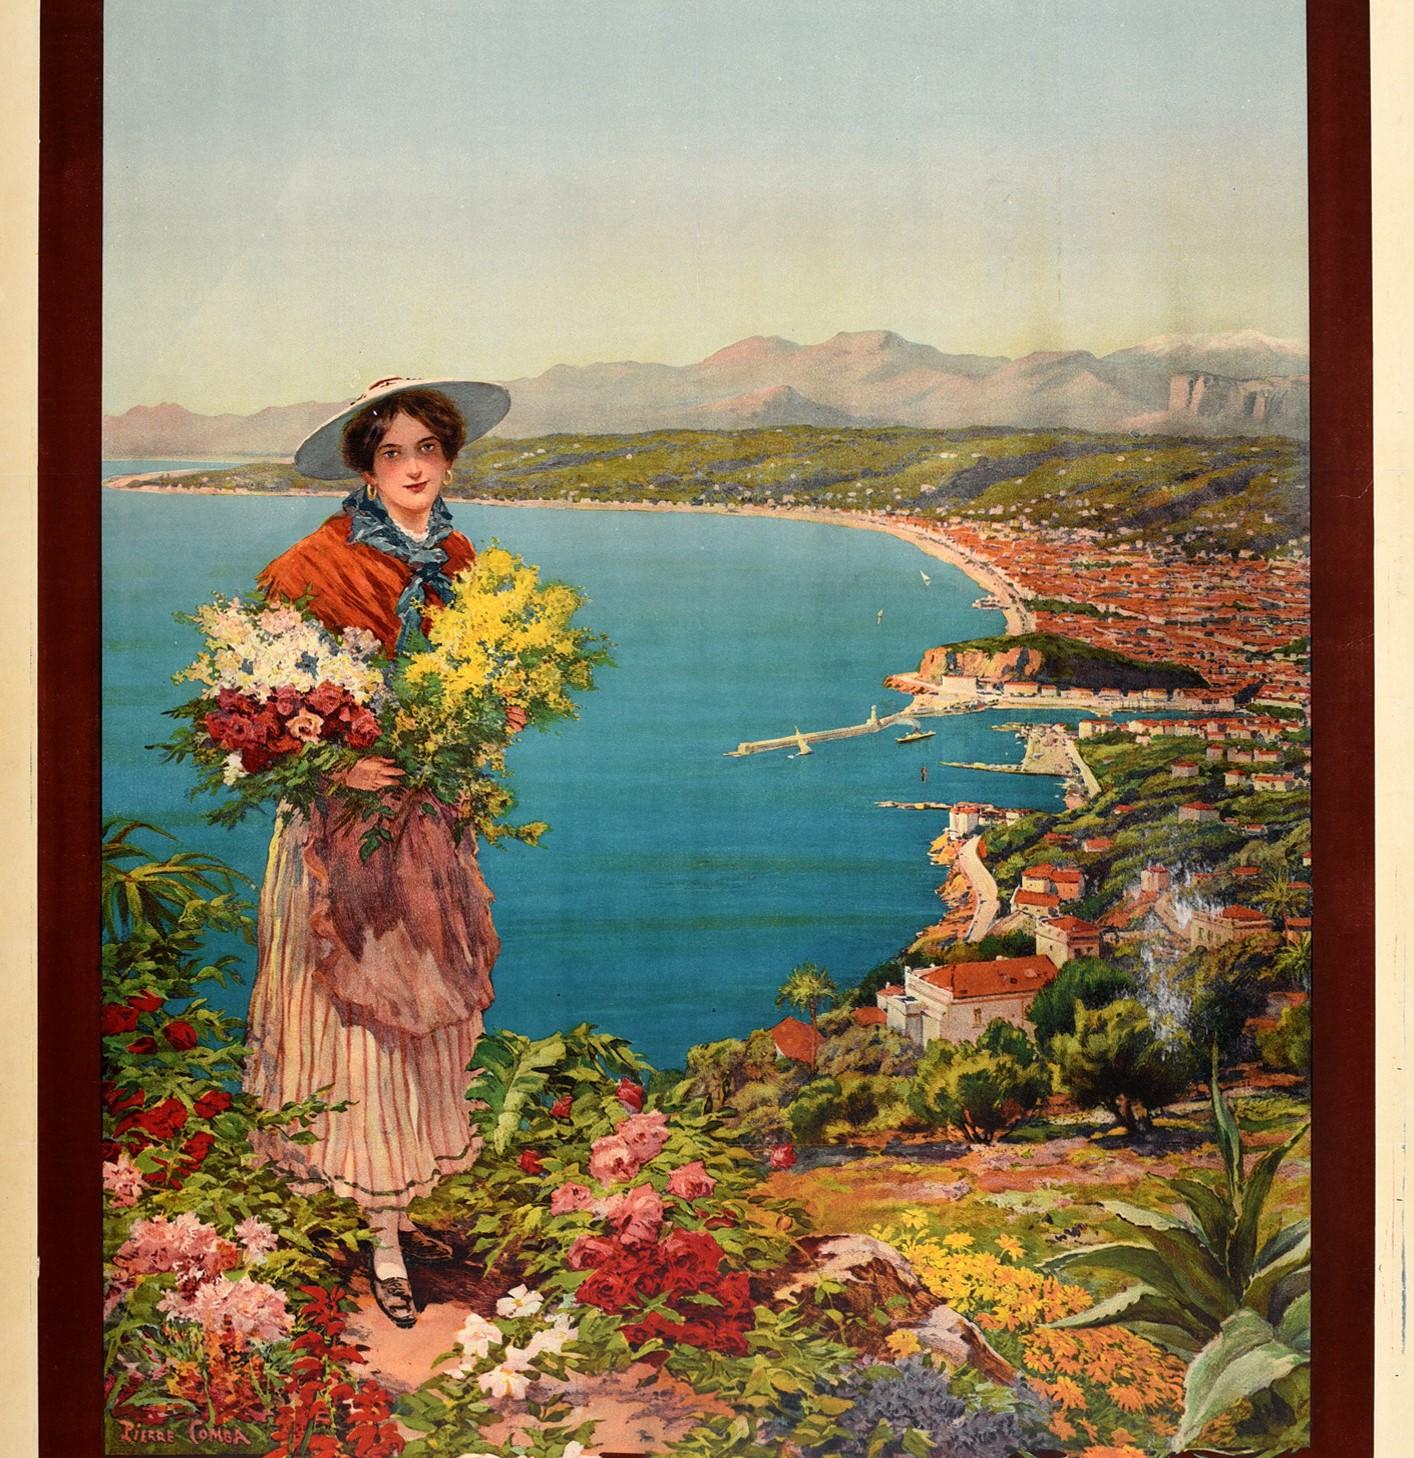 Original Antique Poster Nice Reine De La Cote D'Azur French Riviera Travel Sport - Print by Pierre Comba